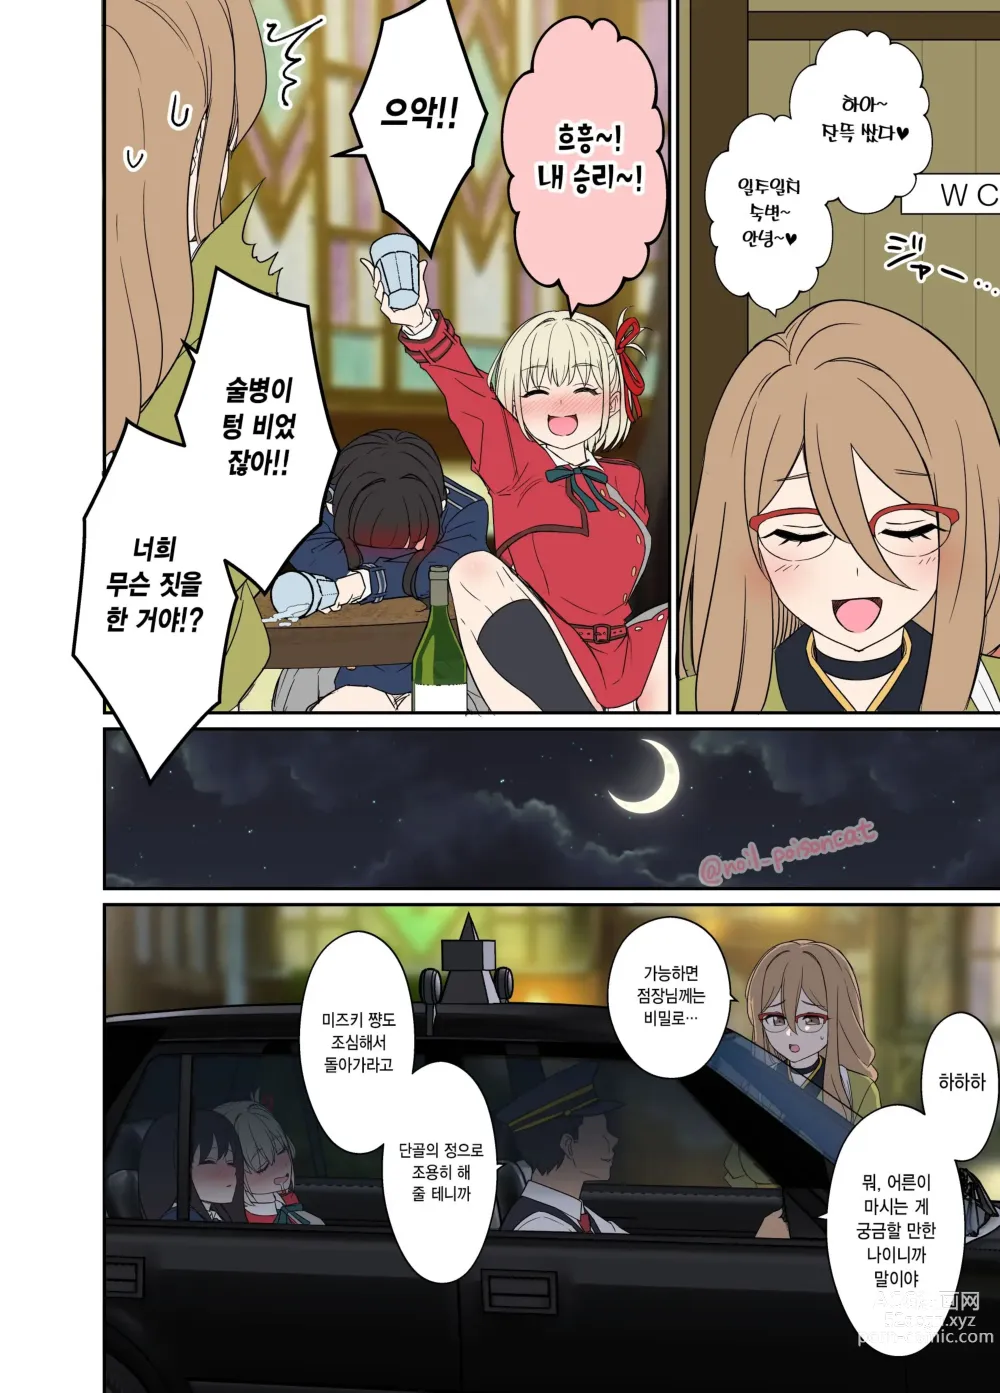 Page 3 of doujinshi 만취한 니시키기 치사토에게 나쁜 짓을 하는  이야기